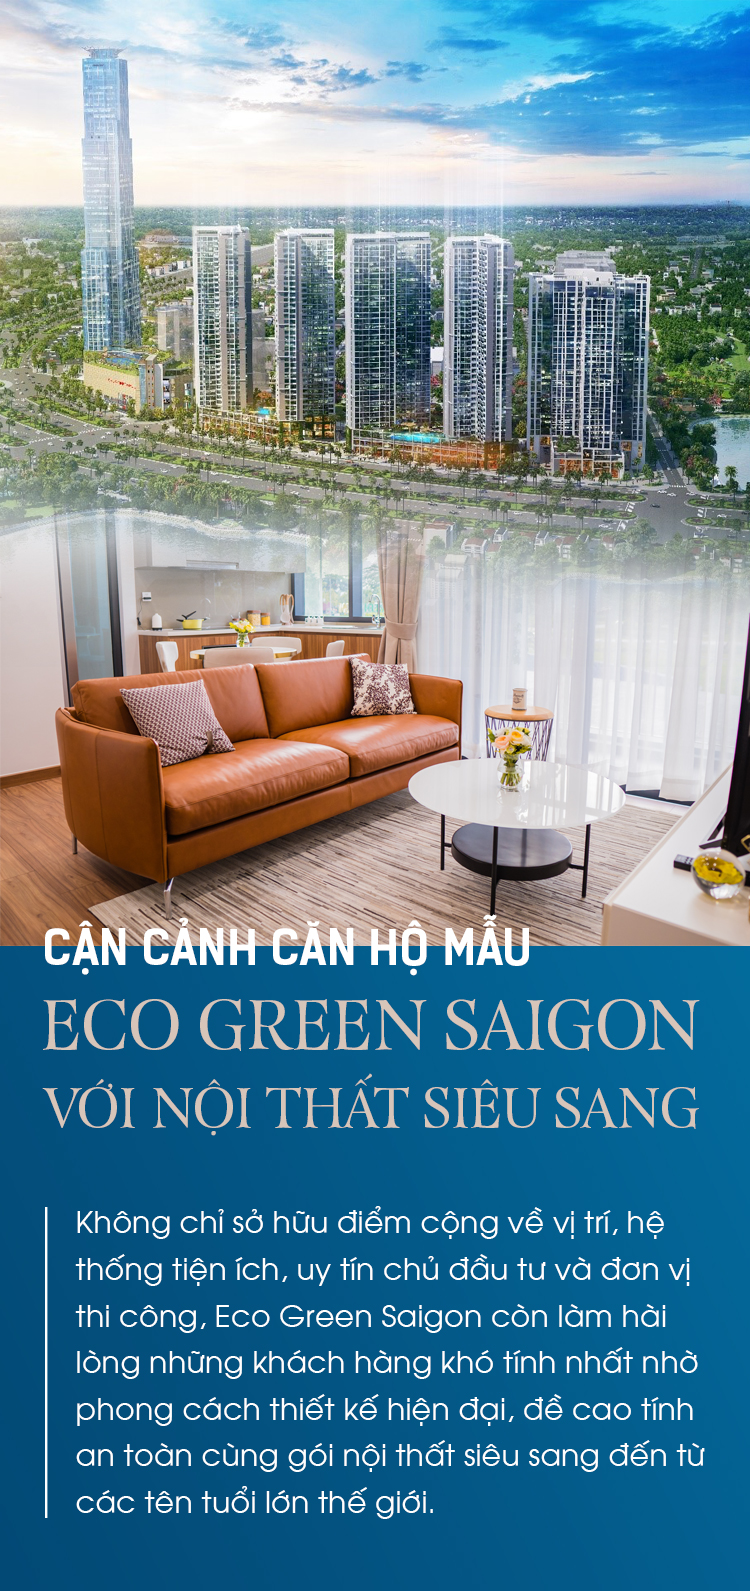 Đến với Eco Green Saigon, quý khách hàng sẽ được trải nghiệm căn hộ chung cư với thiết kế nội thất siêu sang, đạt chuẩn quốc tế. Với các vật liệu cao cấp, sự khéo léo trong chọn lựa, thiết kế nội thất của chúng tôi đã mang đến một căn hộ mẫu xuất sắc đến không ngờ. Hãy xem qua hình ảnh để giữ lại những cảm xúc tuyệt vời nhất tại Eco Green Saigon.